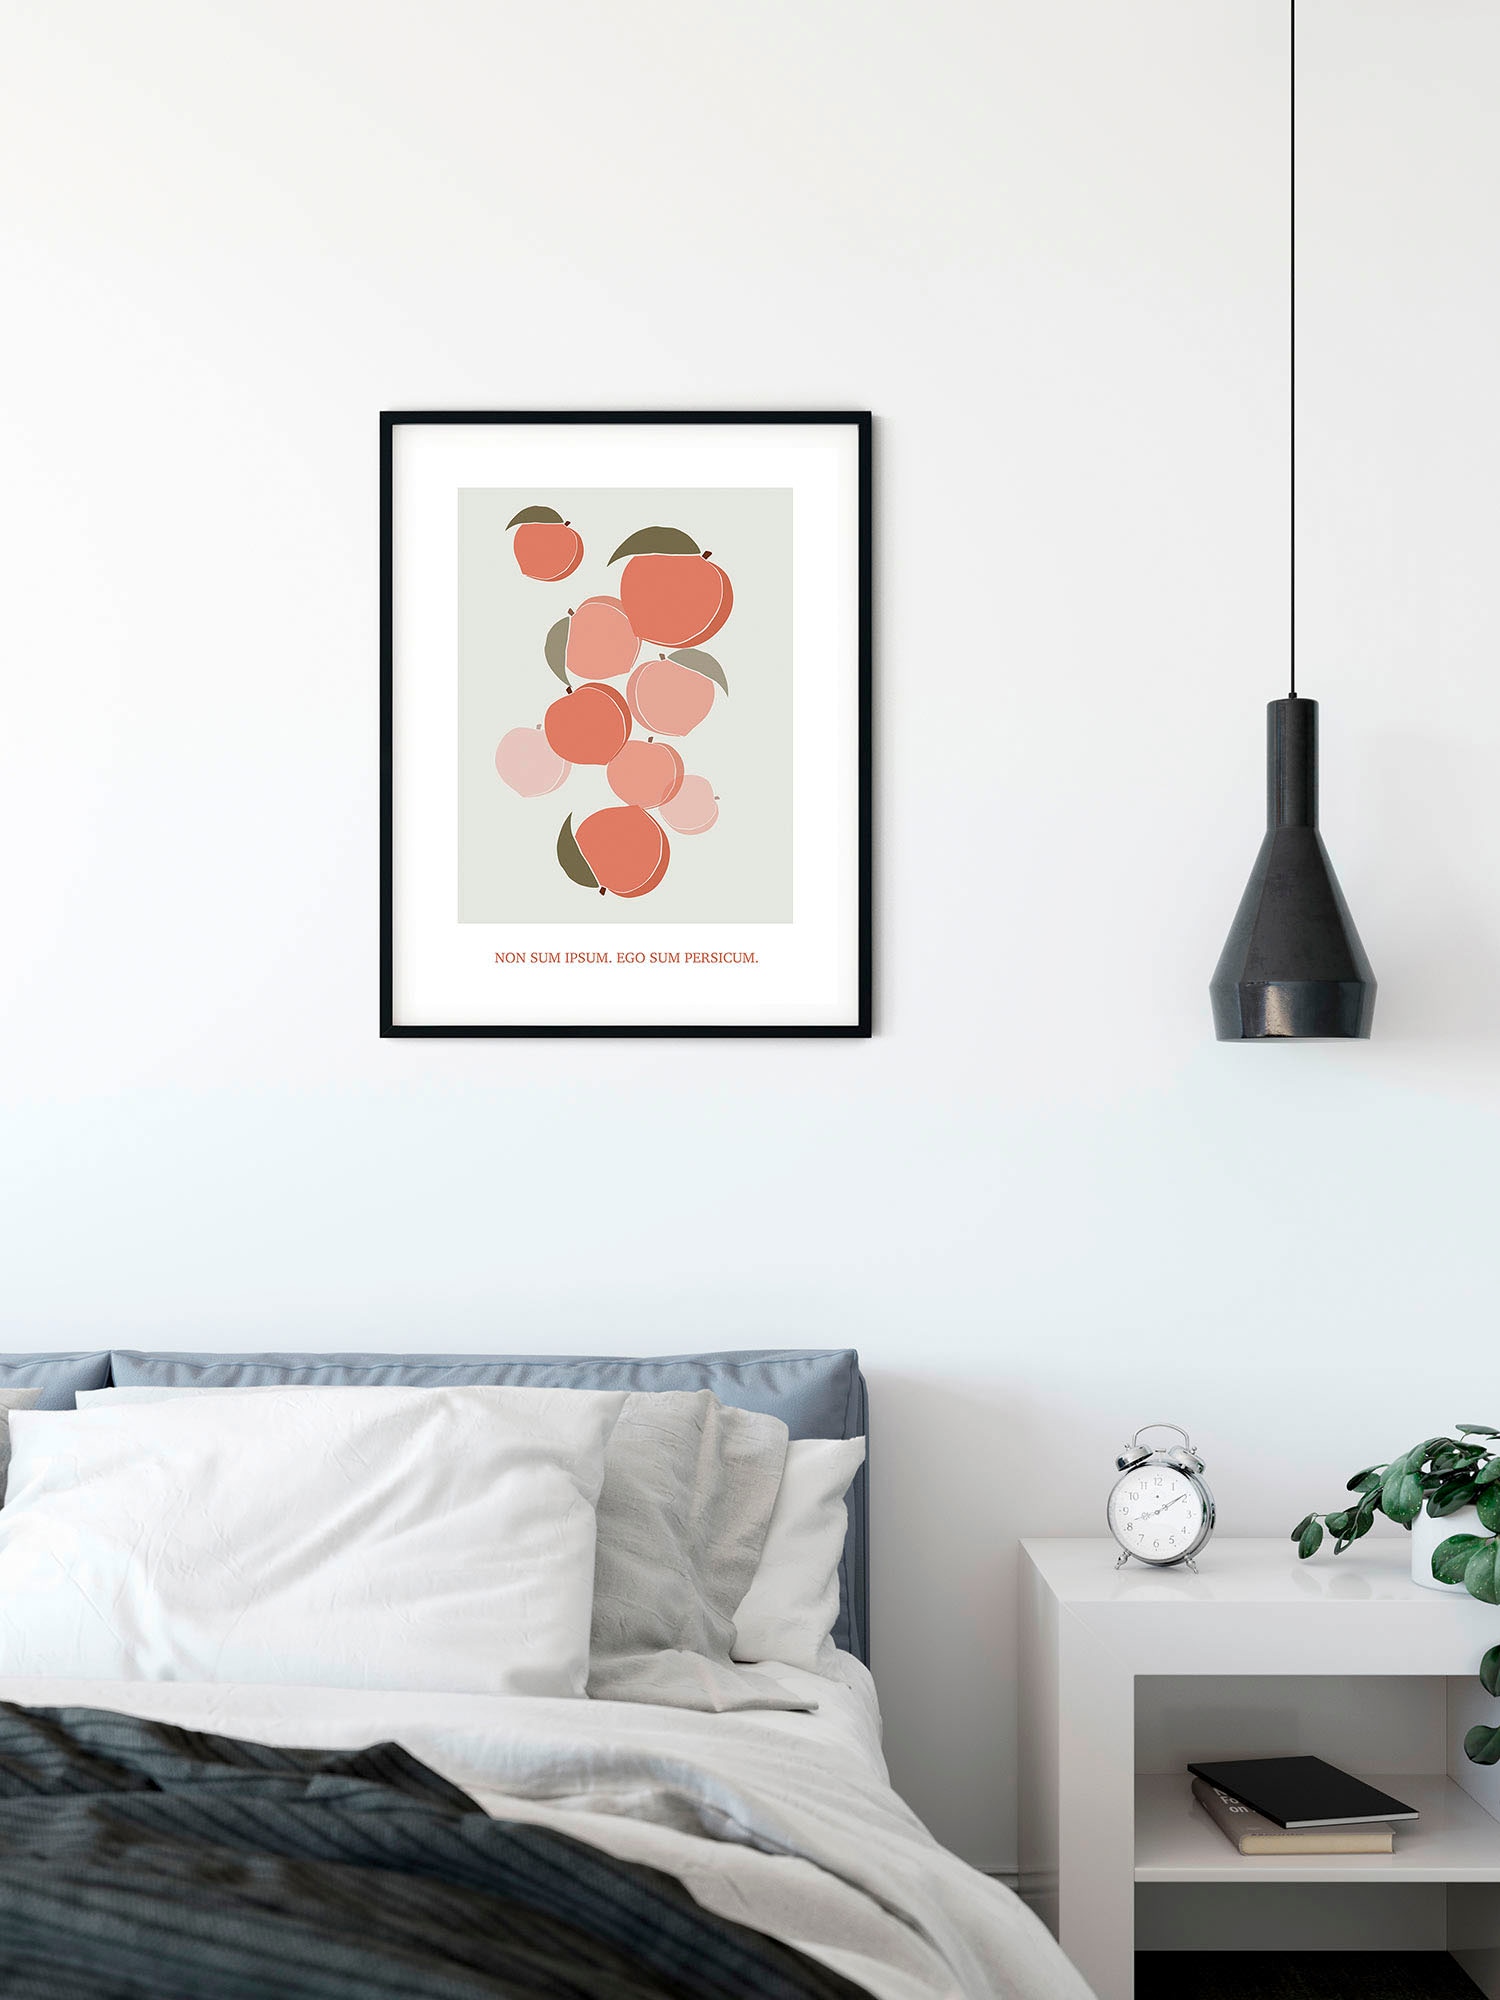 Komar Wandbild »Cultivated Peaches«, (1 St.), Deutsches Premium-Poster Fotopapier mit seidenmatter Oberfläche und hoher Lichtbeständigkeit. Für fotorealistische Drucke mit gestochen scharfen Details und hervorragender Farbbrillanz.